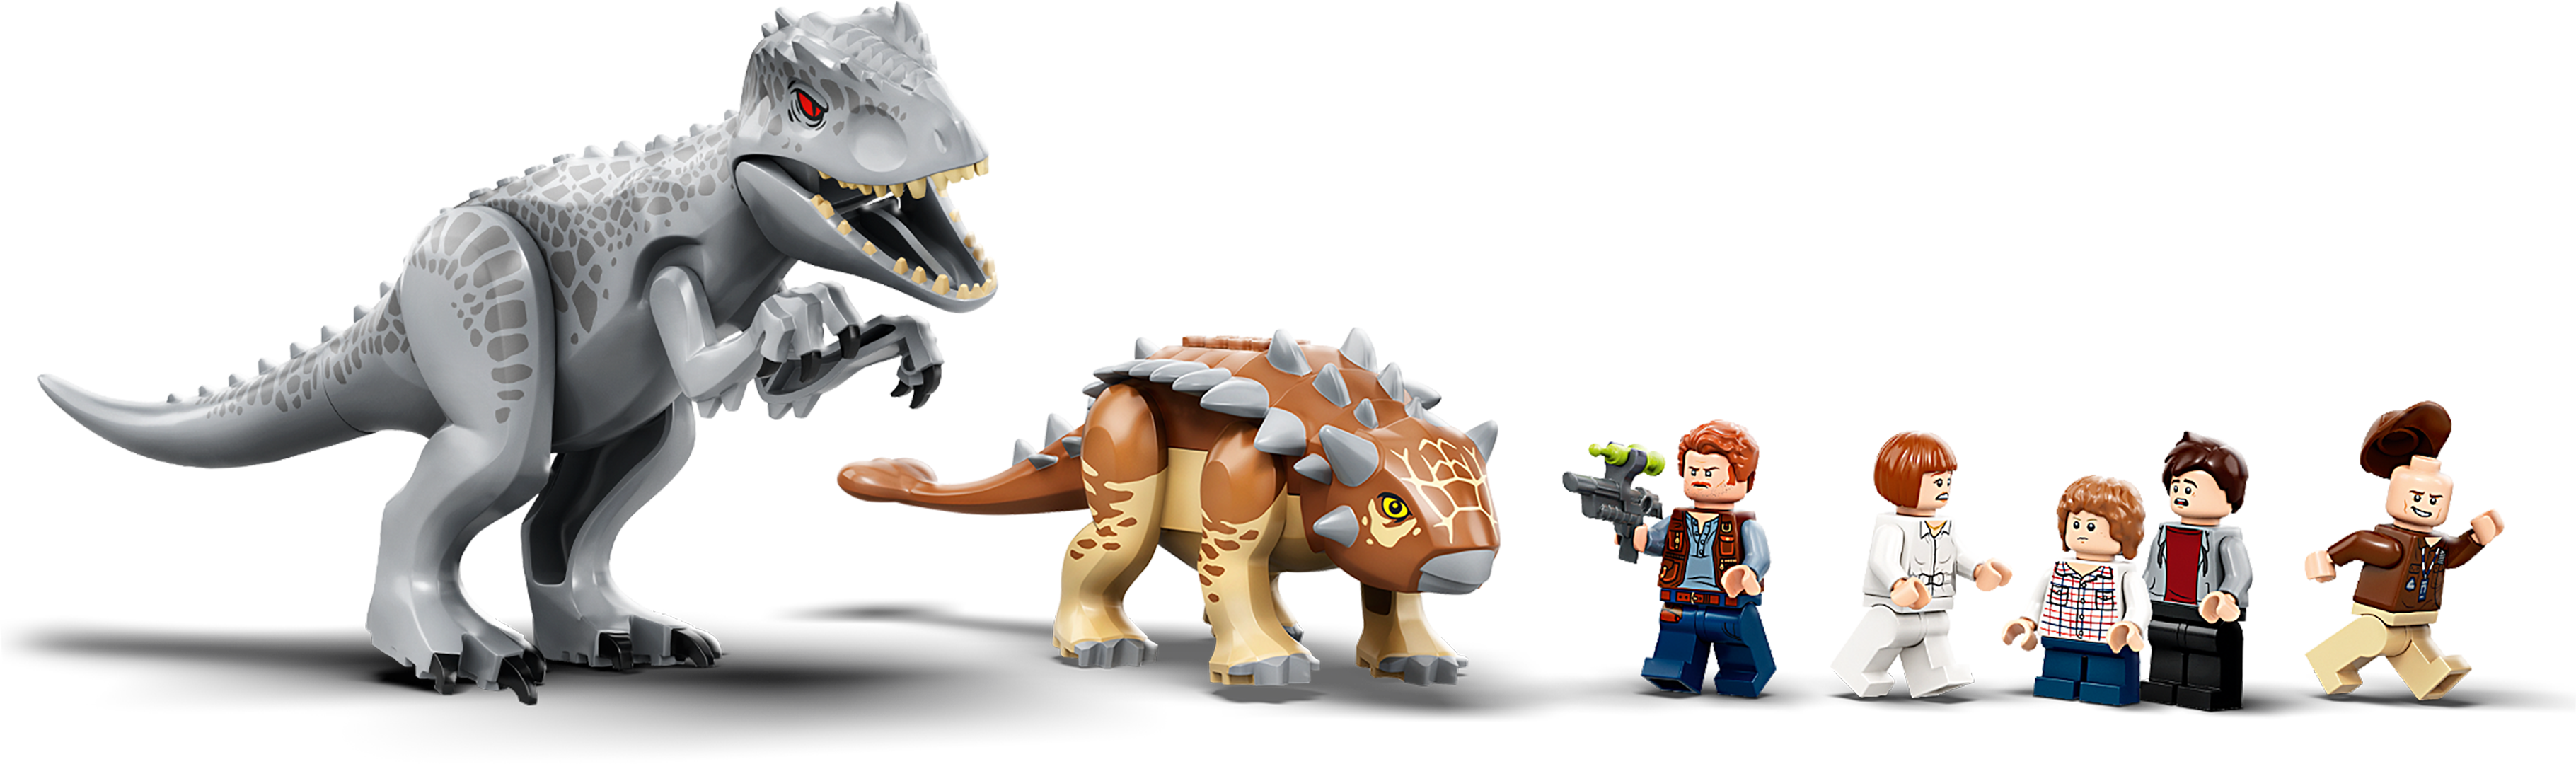 LEGO Jurassic World 75941 pas cher, L'Indominus Rex contre l'Ankylosaure